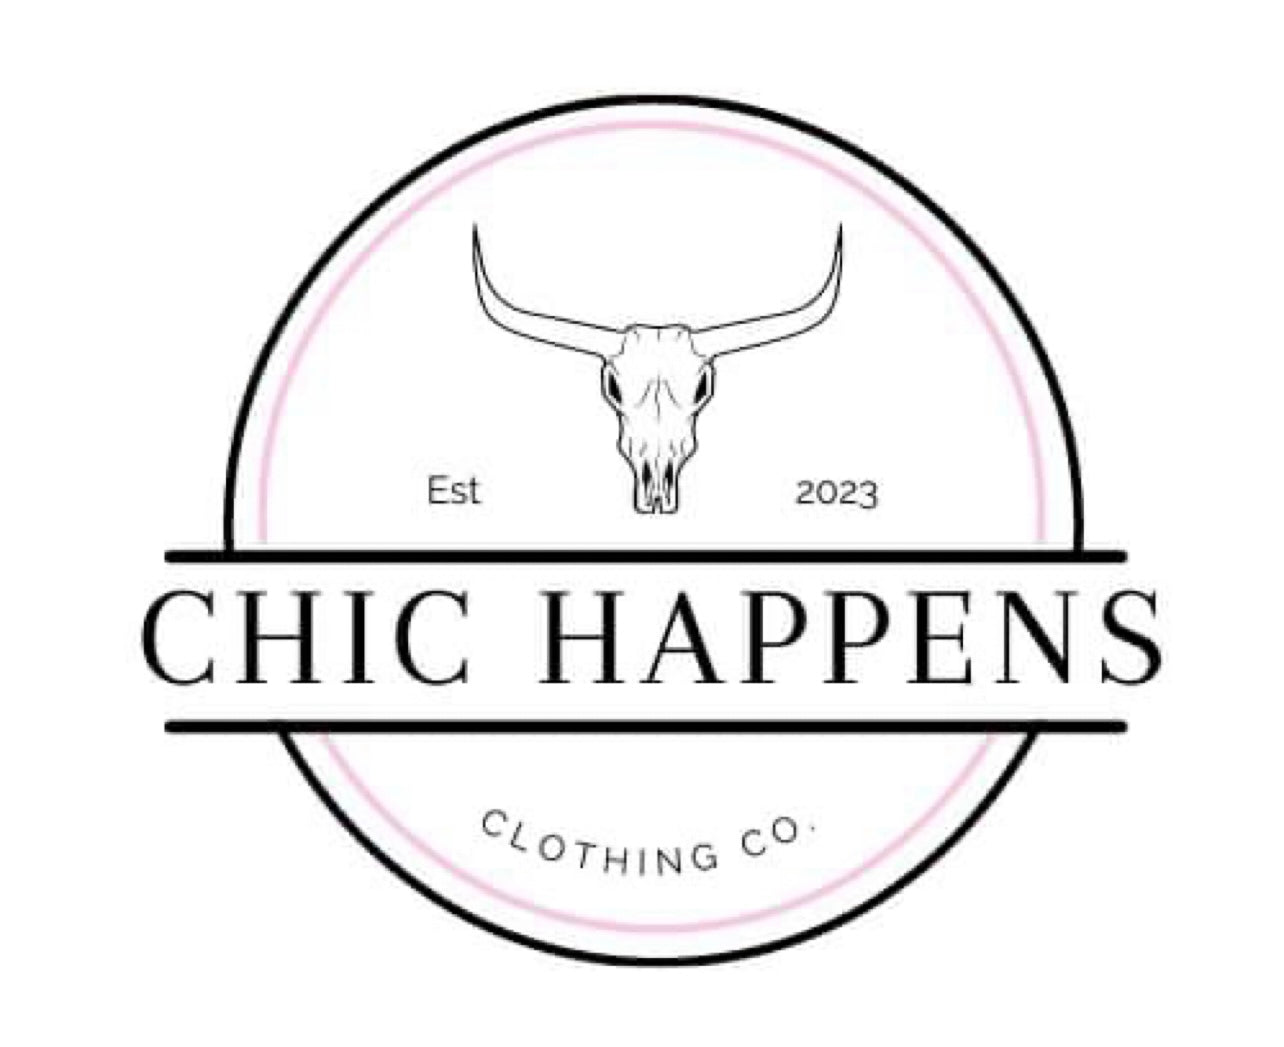 Chic Happens Clothing C. – Chic Happens Clothing Co.